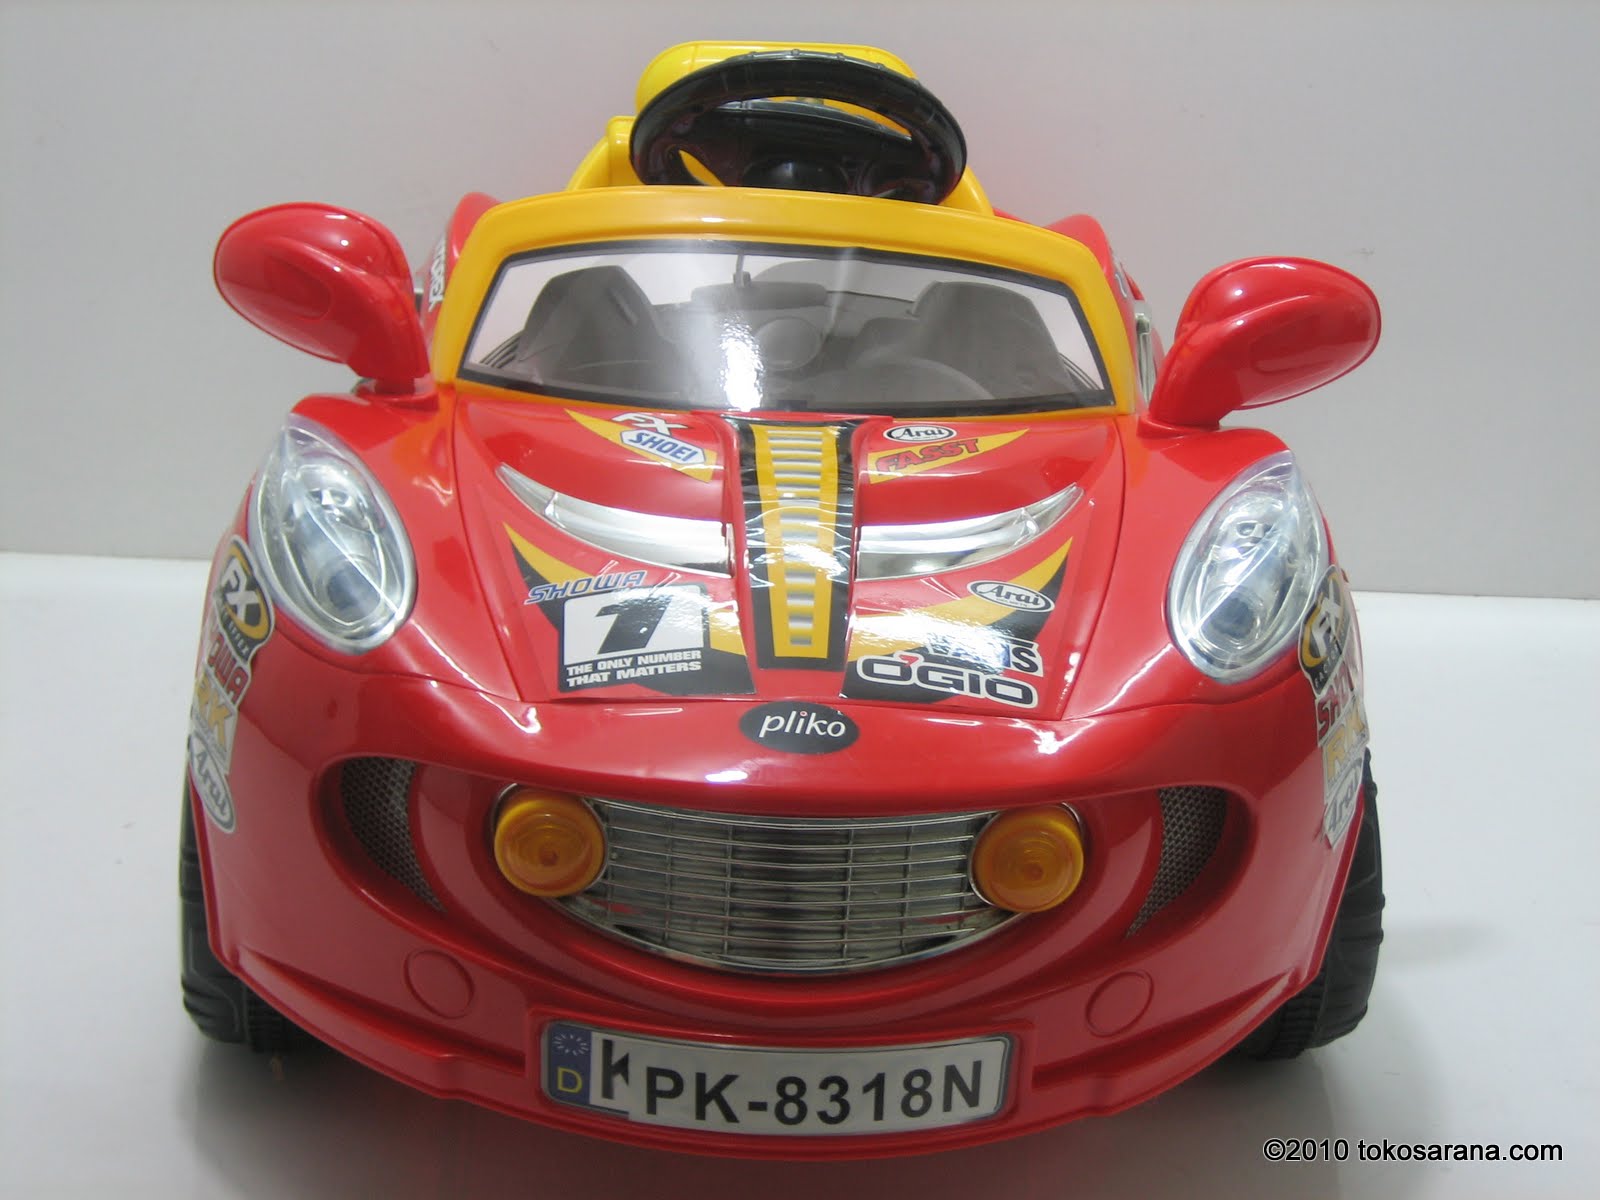 Harga Mobil Mainan Anak Yang Bisa Dinaiki - Dhian Toys